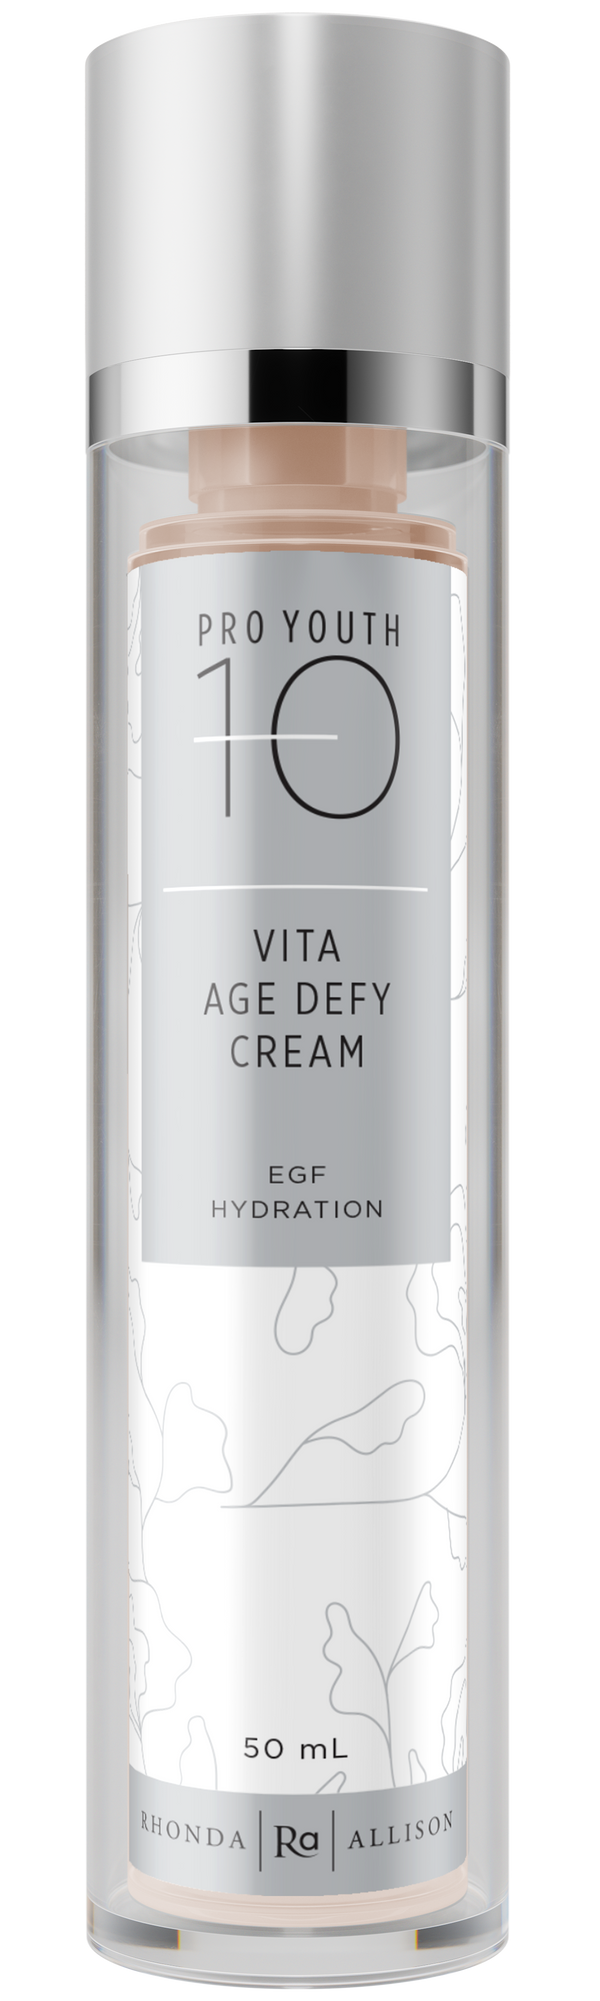 Vita Age Defy Cream/EGF Hydration